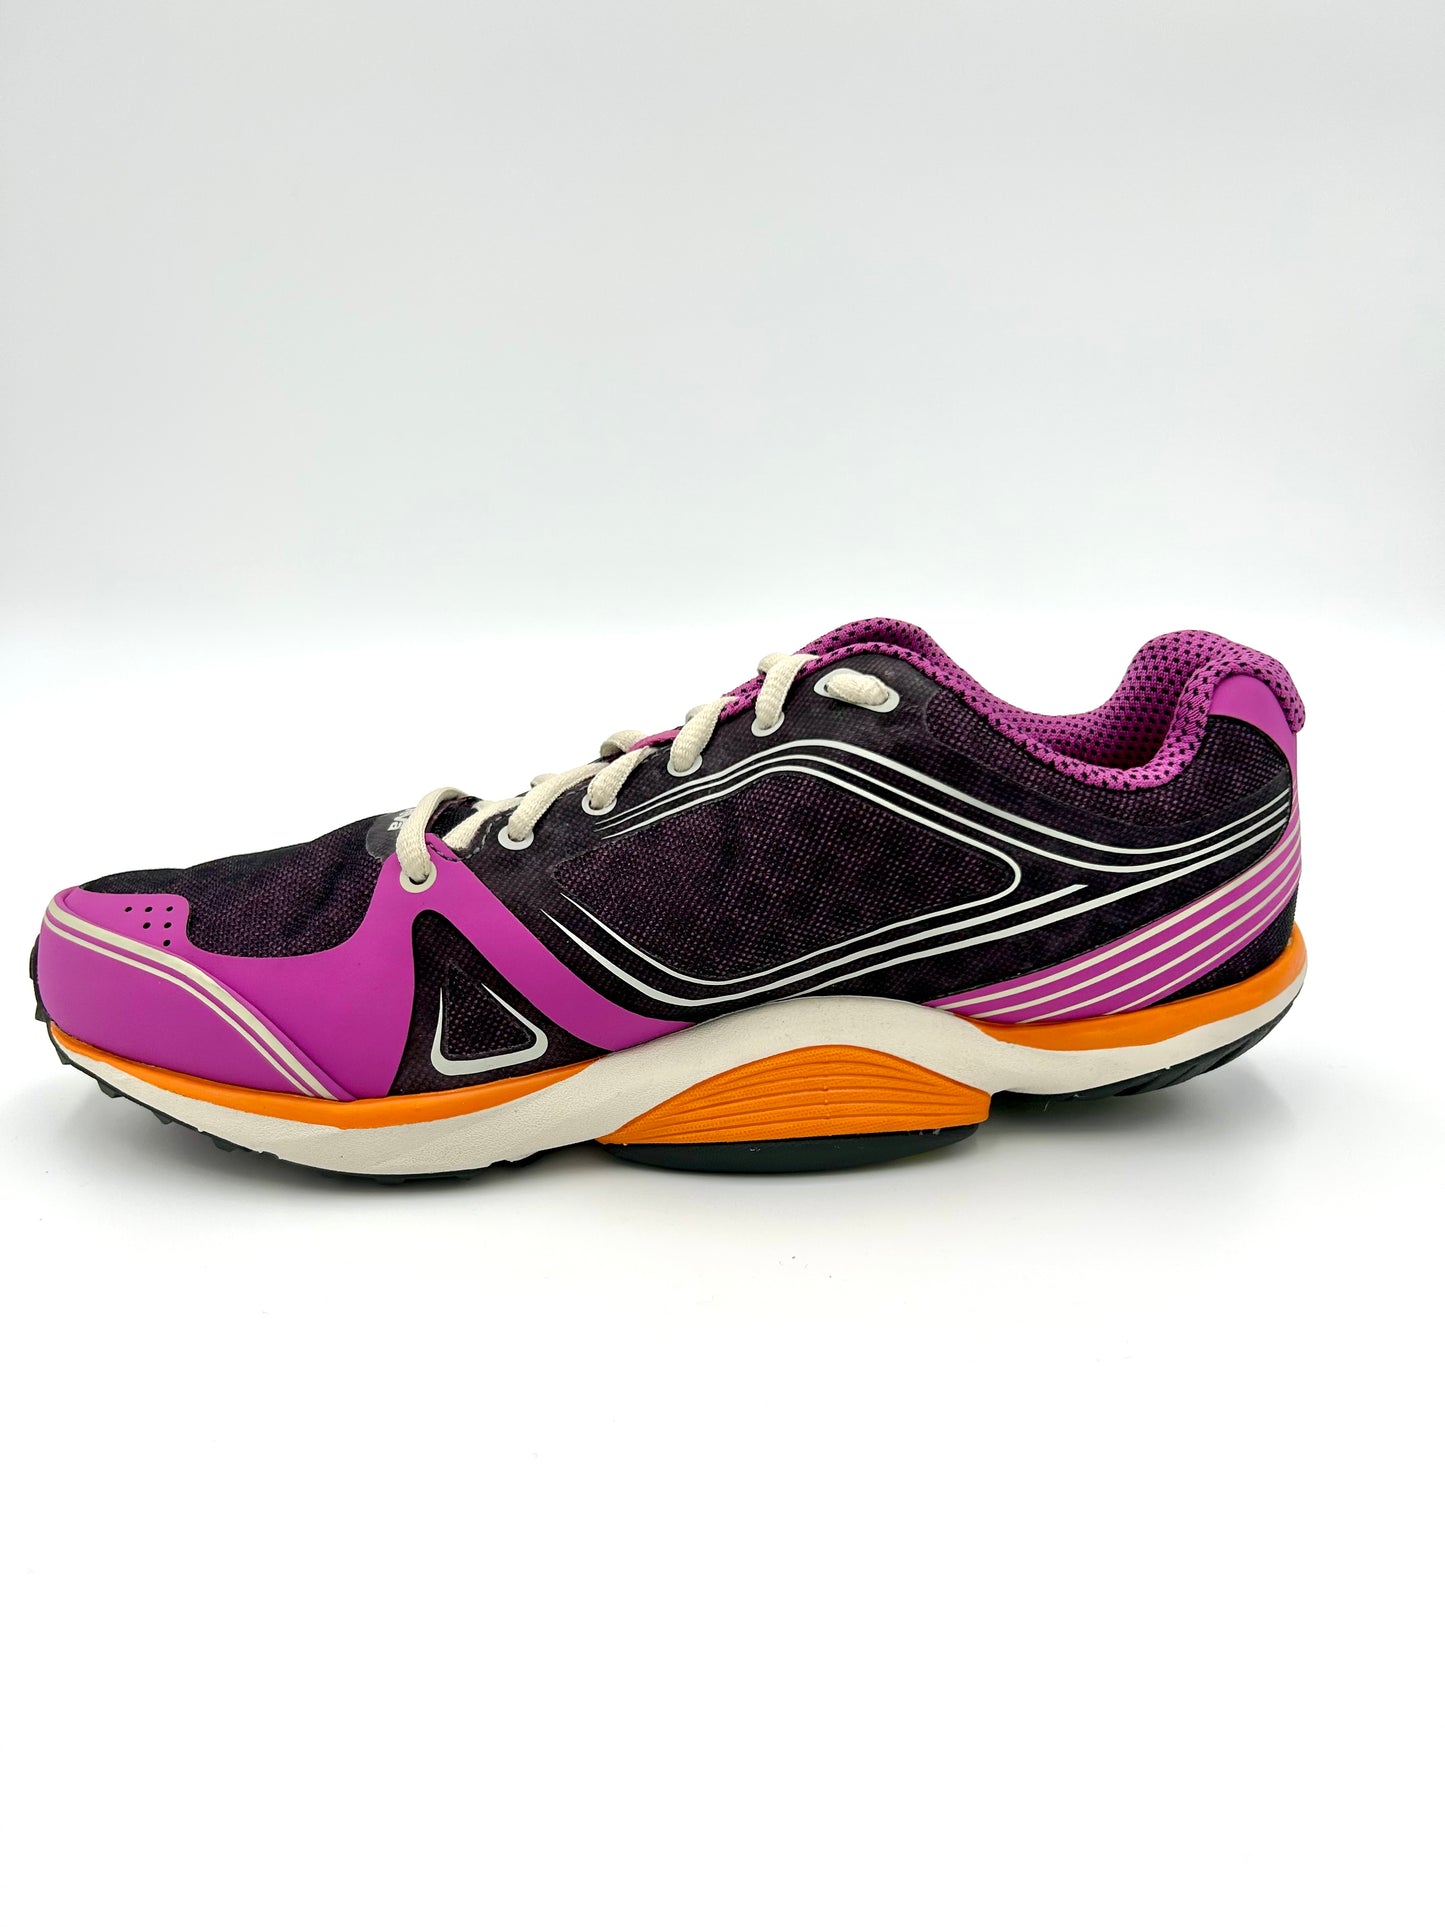 Teva - Sphere Speed Sneakers Shoes - Purple and orange - Teva